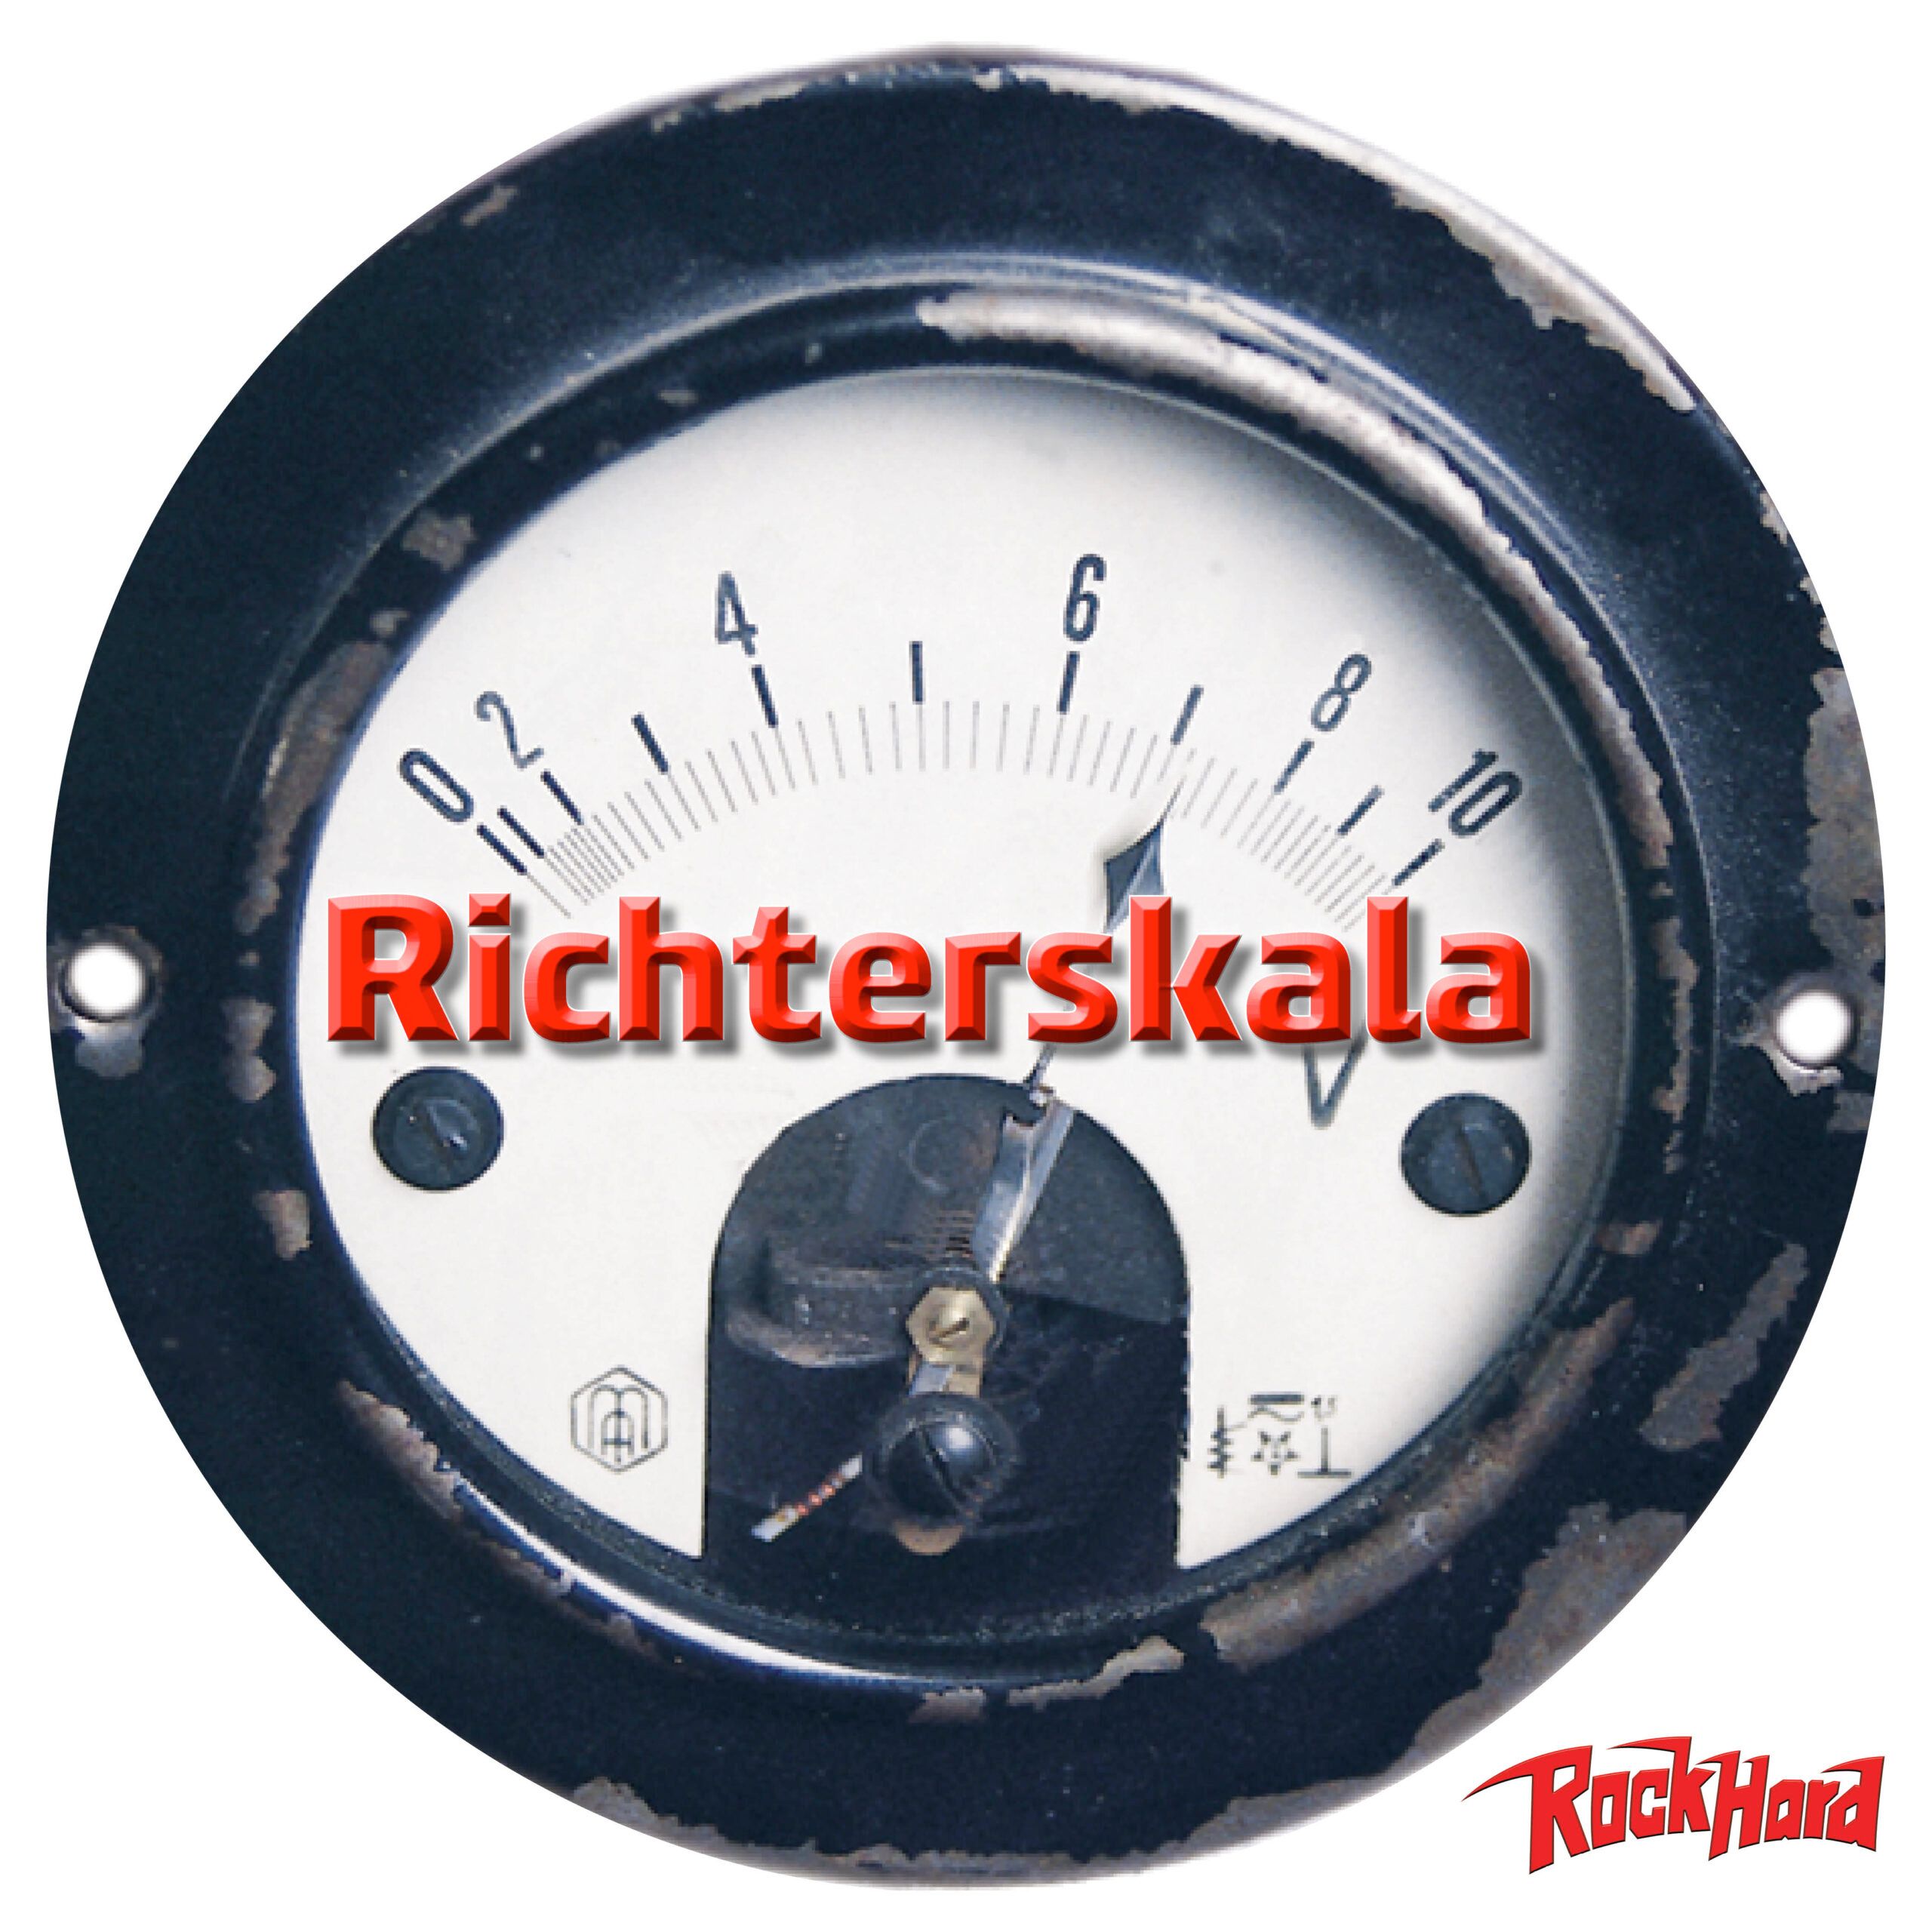 Rock Hard Richterskala April 2020: Die Spotify-Playlist ist online